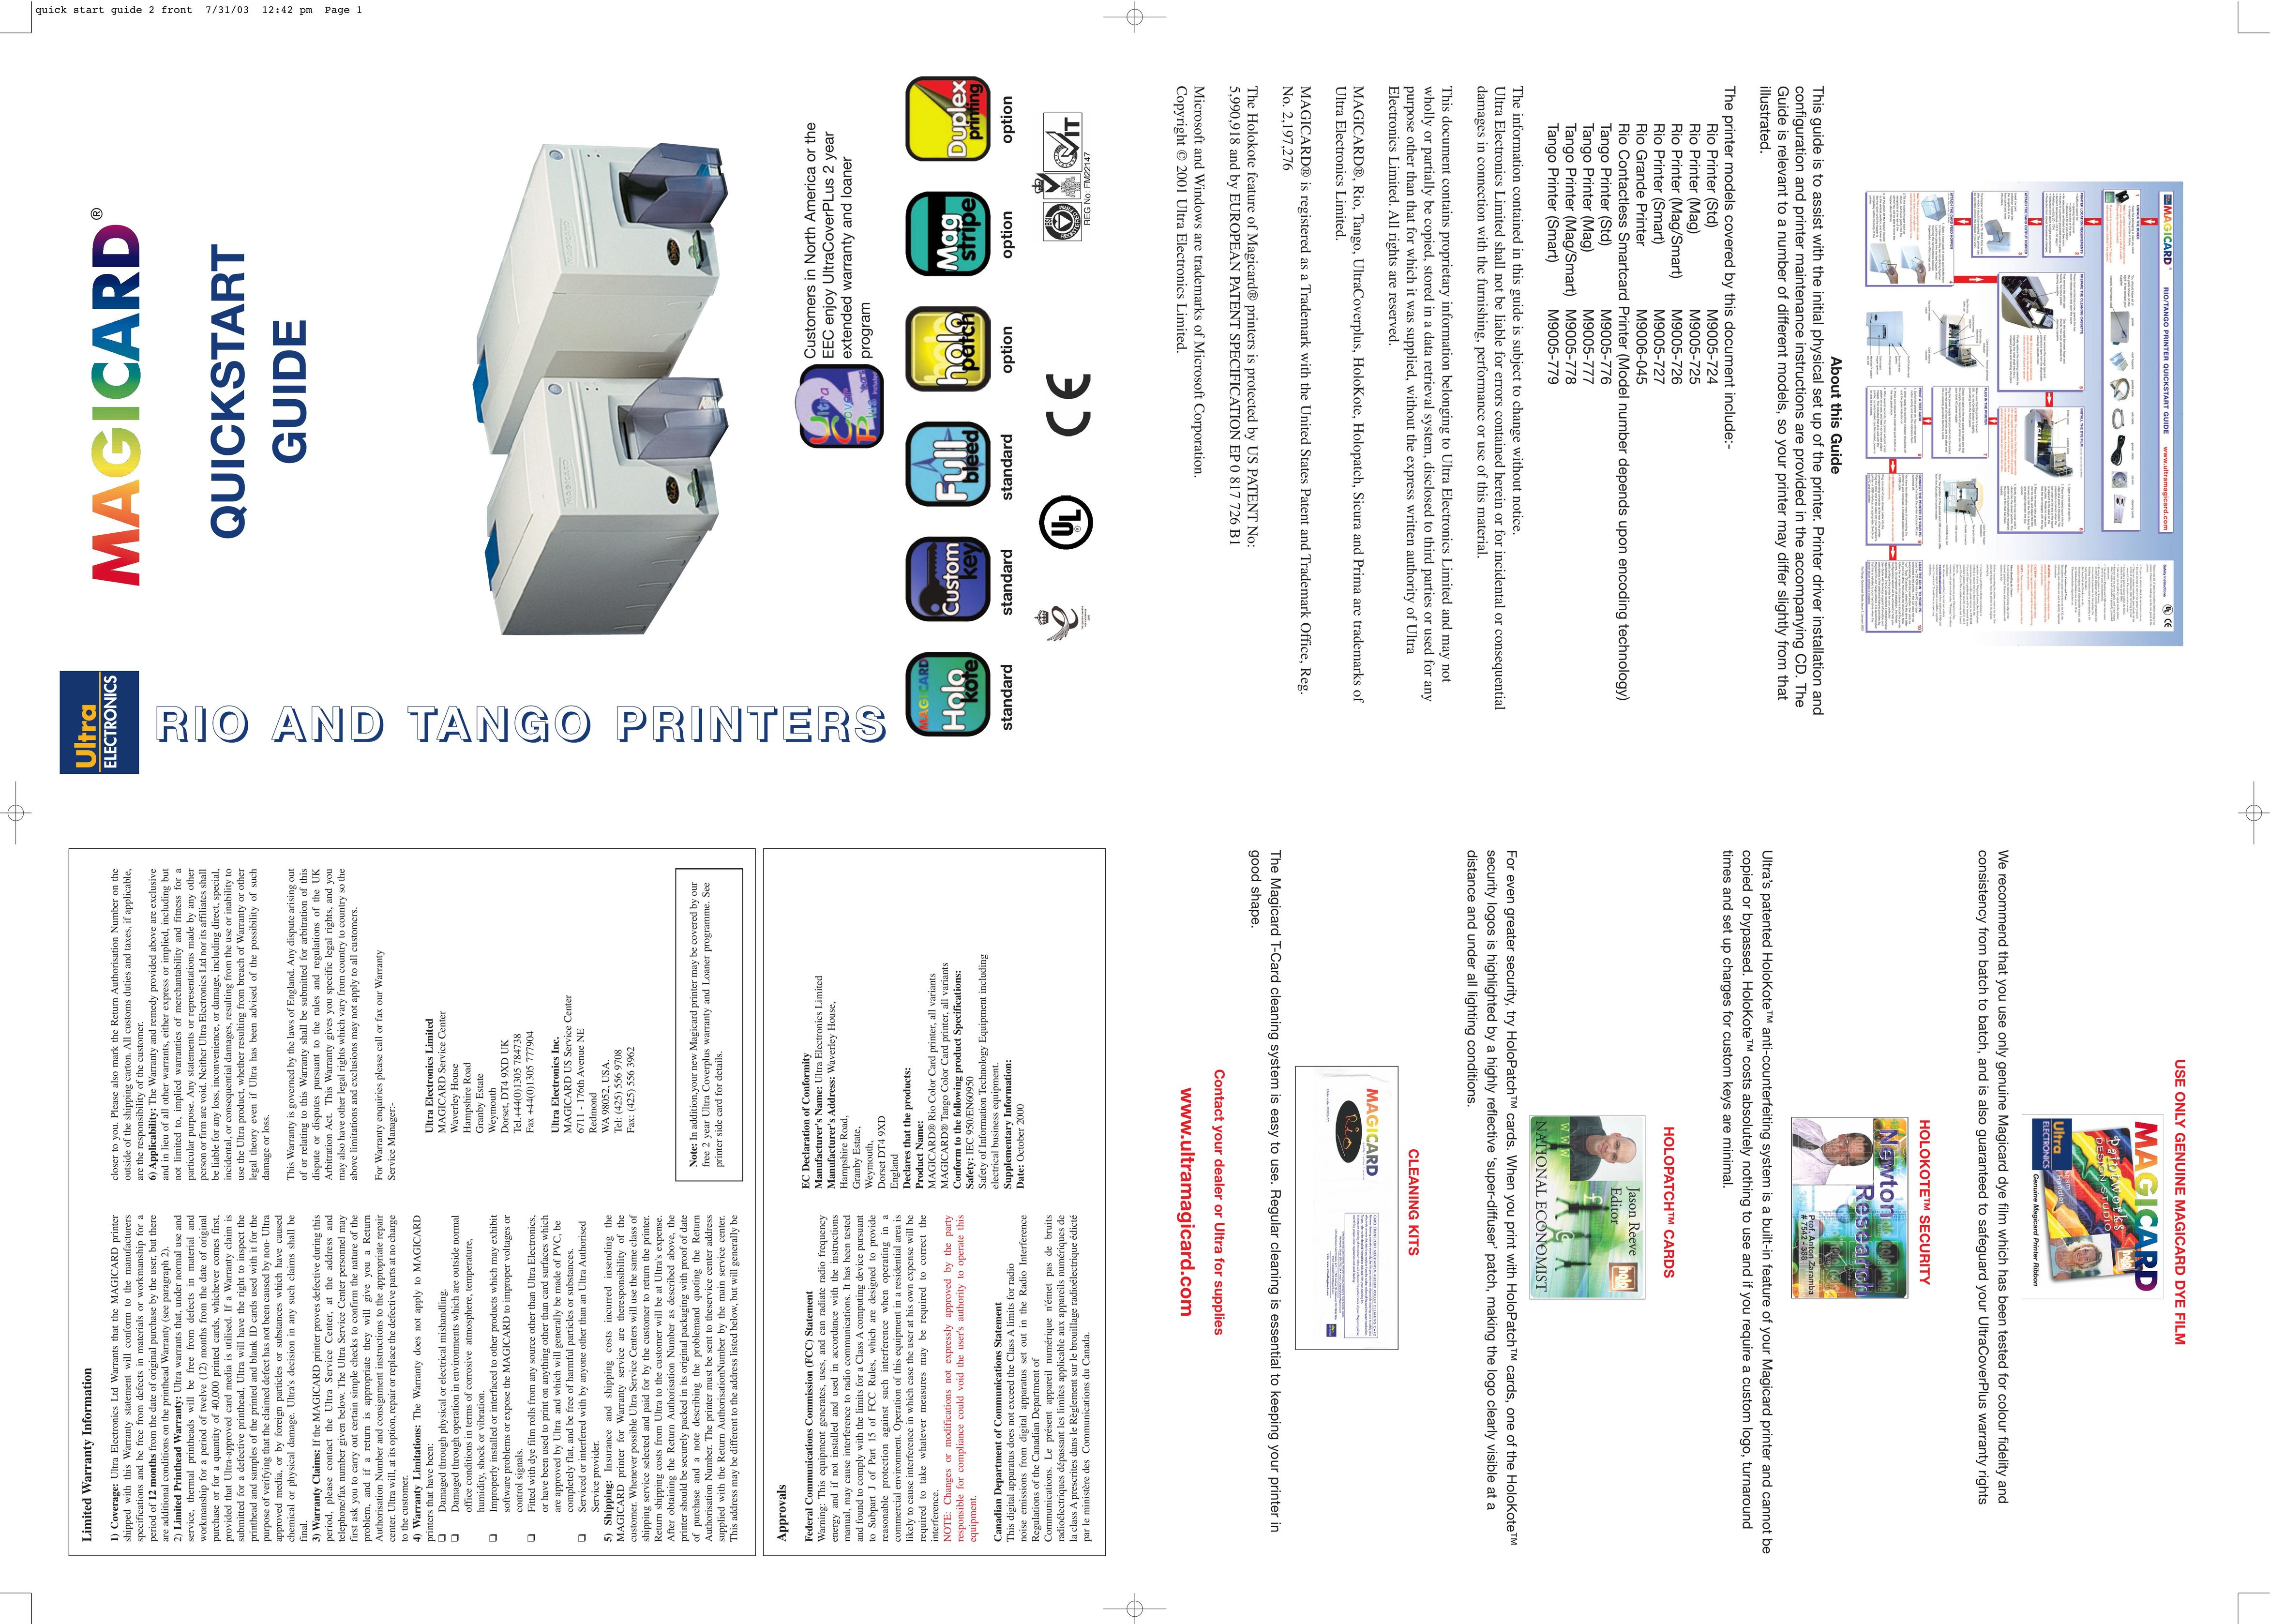 Ultra electronic M9005-724 Printer User Manual